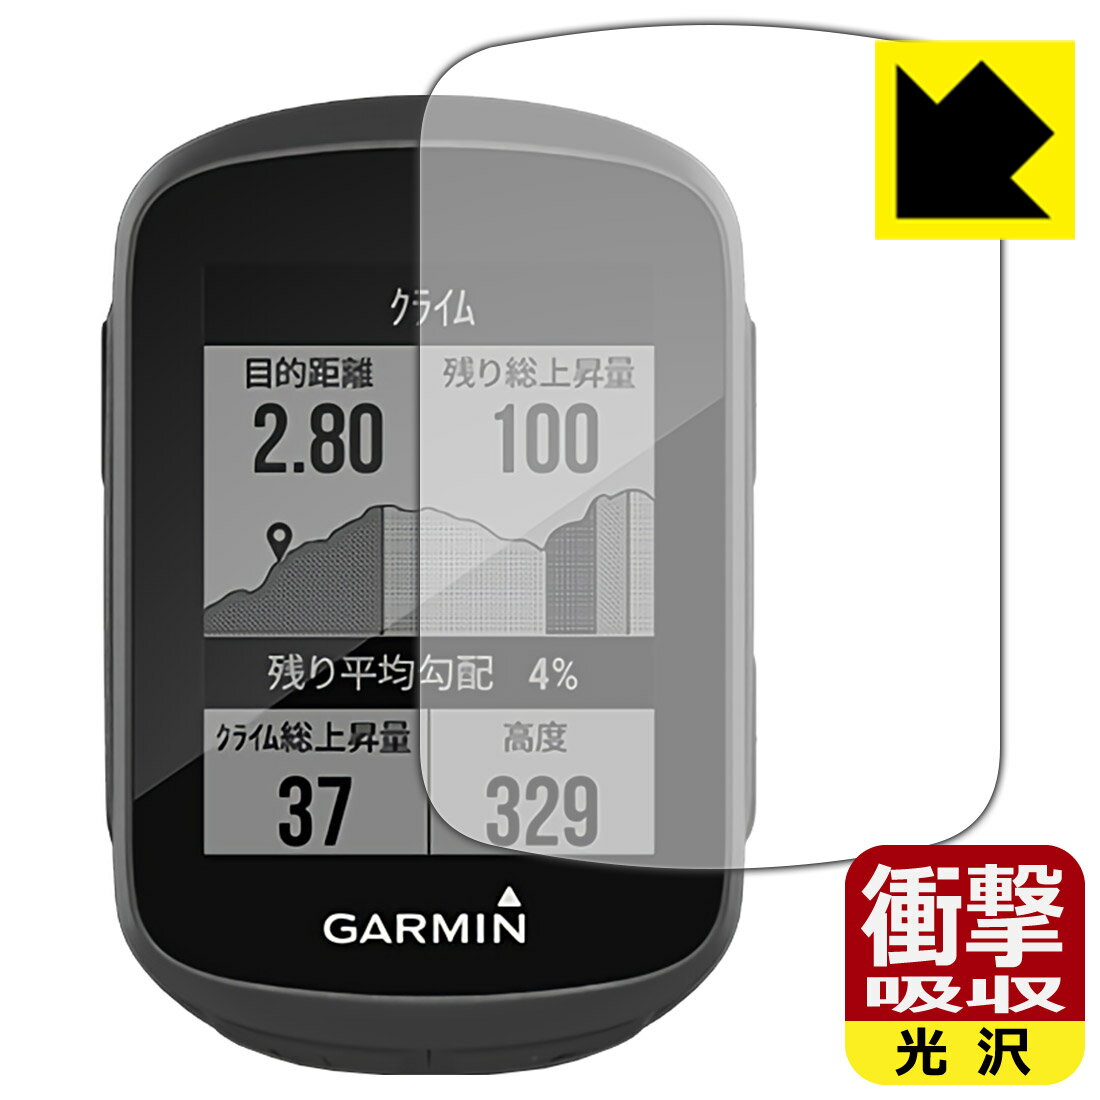 衝撃吸収【光沢】保護フィルム ガーミン GARMIN Edge 130 / 130 Plus 日本製 自社製造直販 1